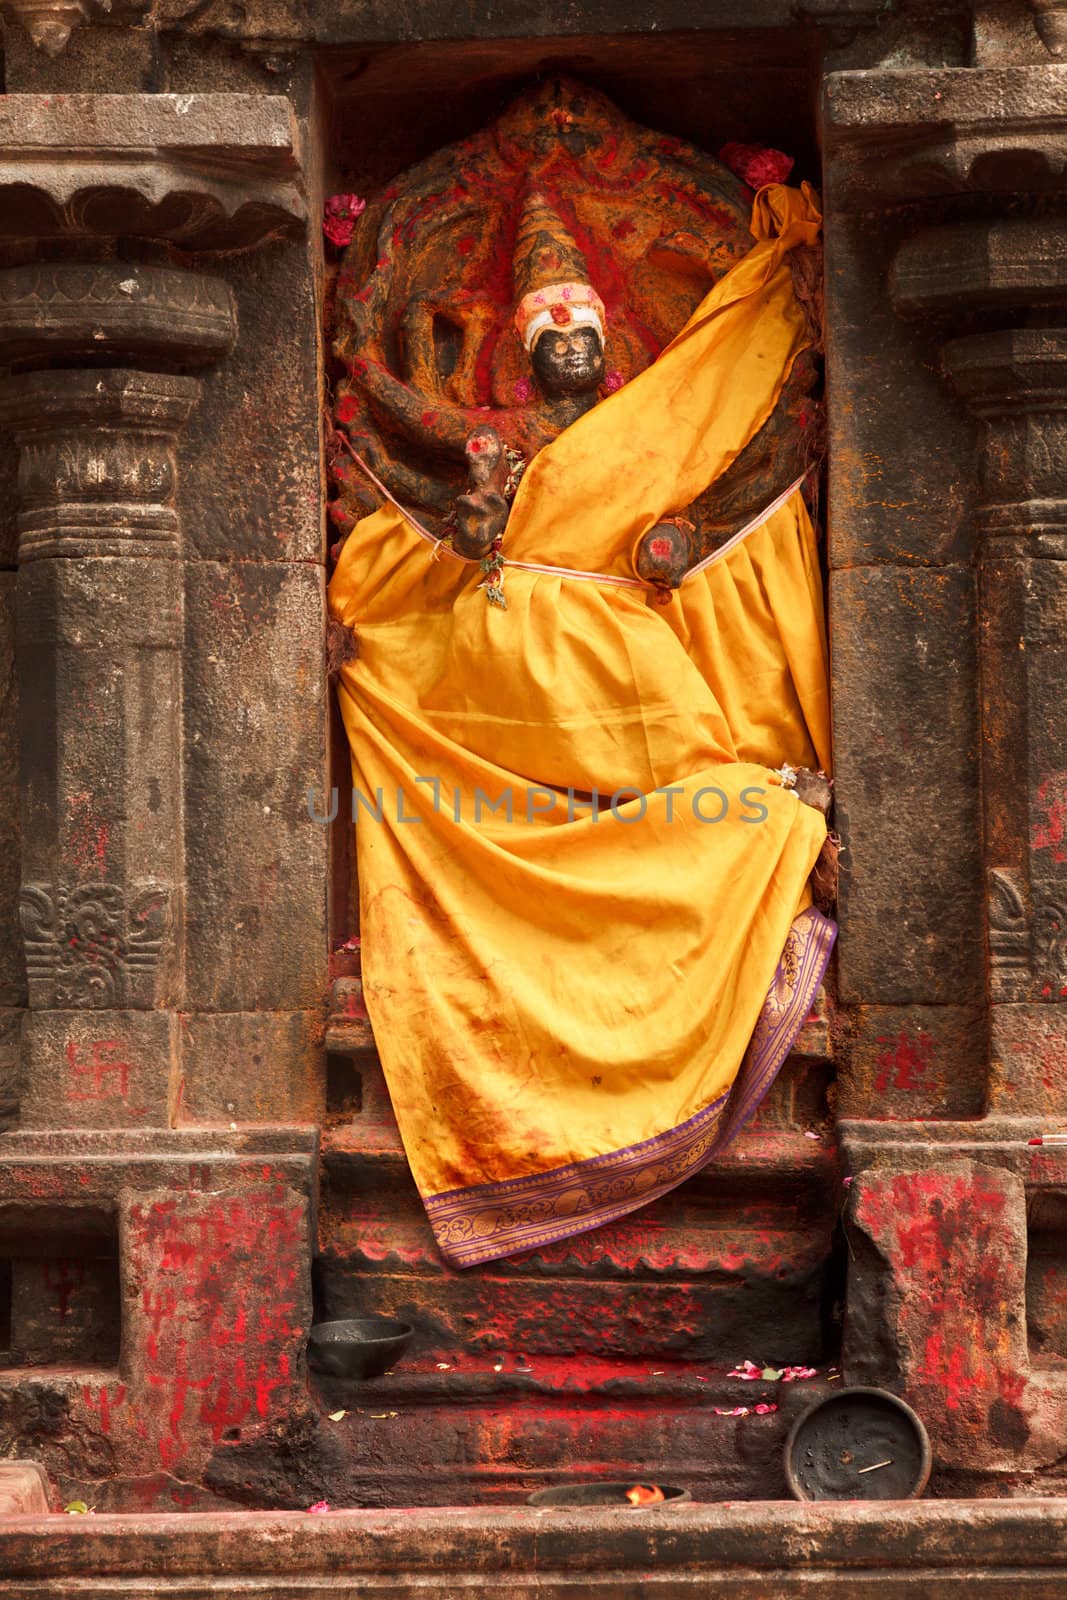 Lakshmi image by dimol